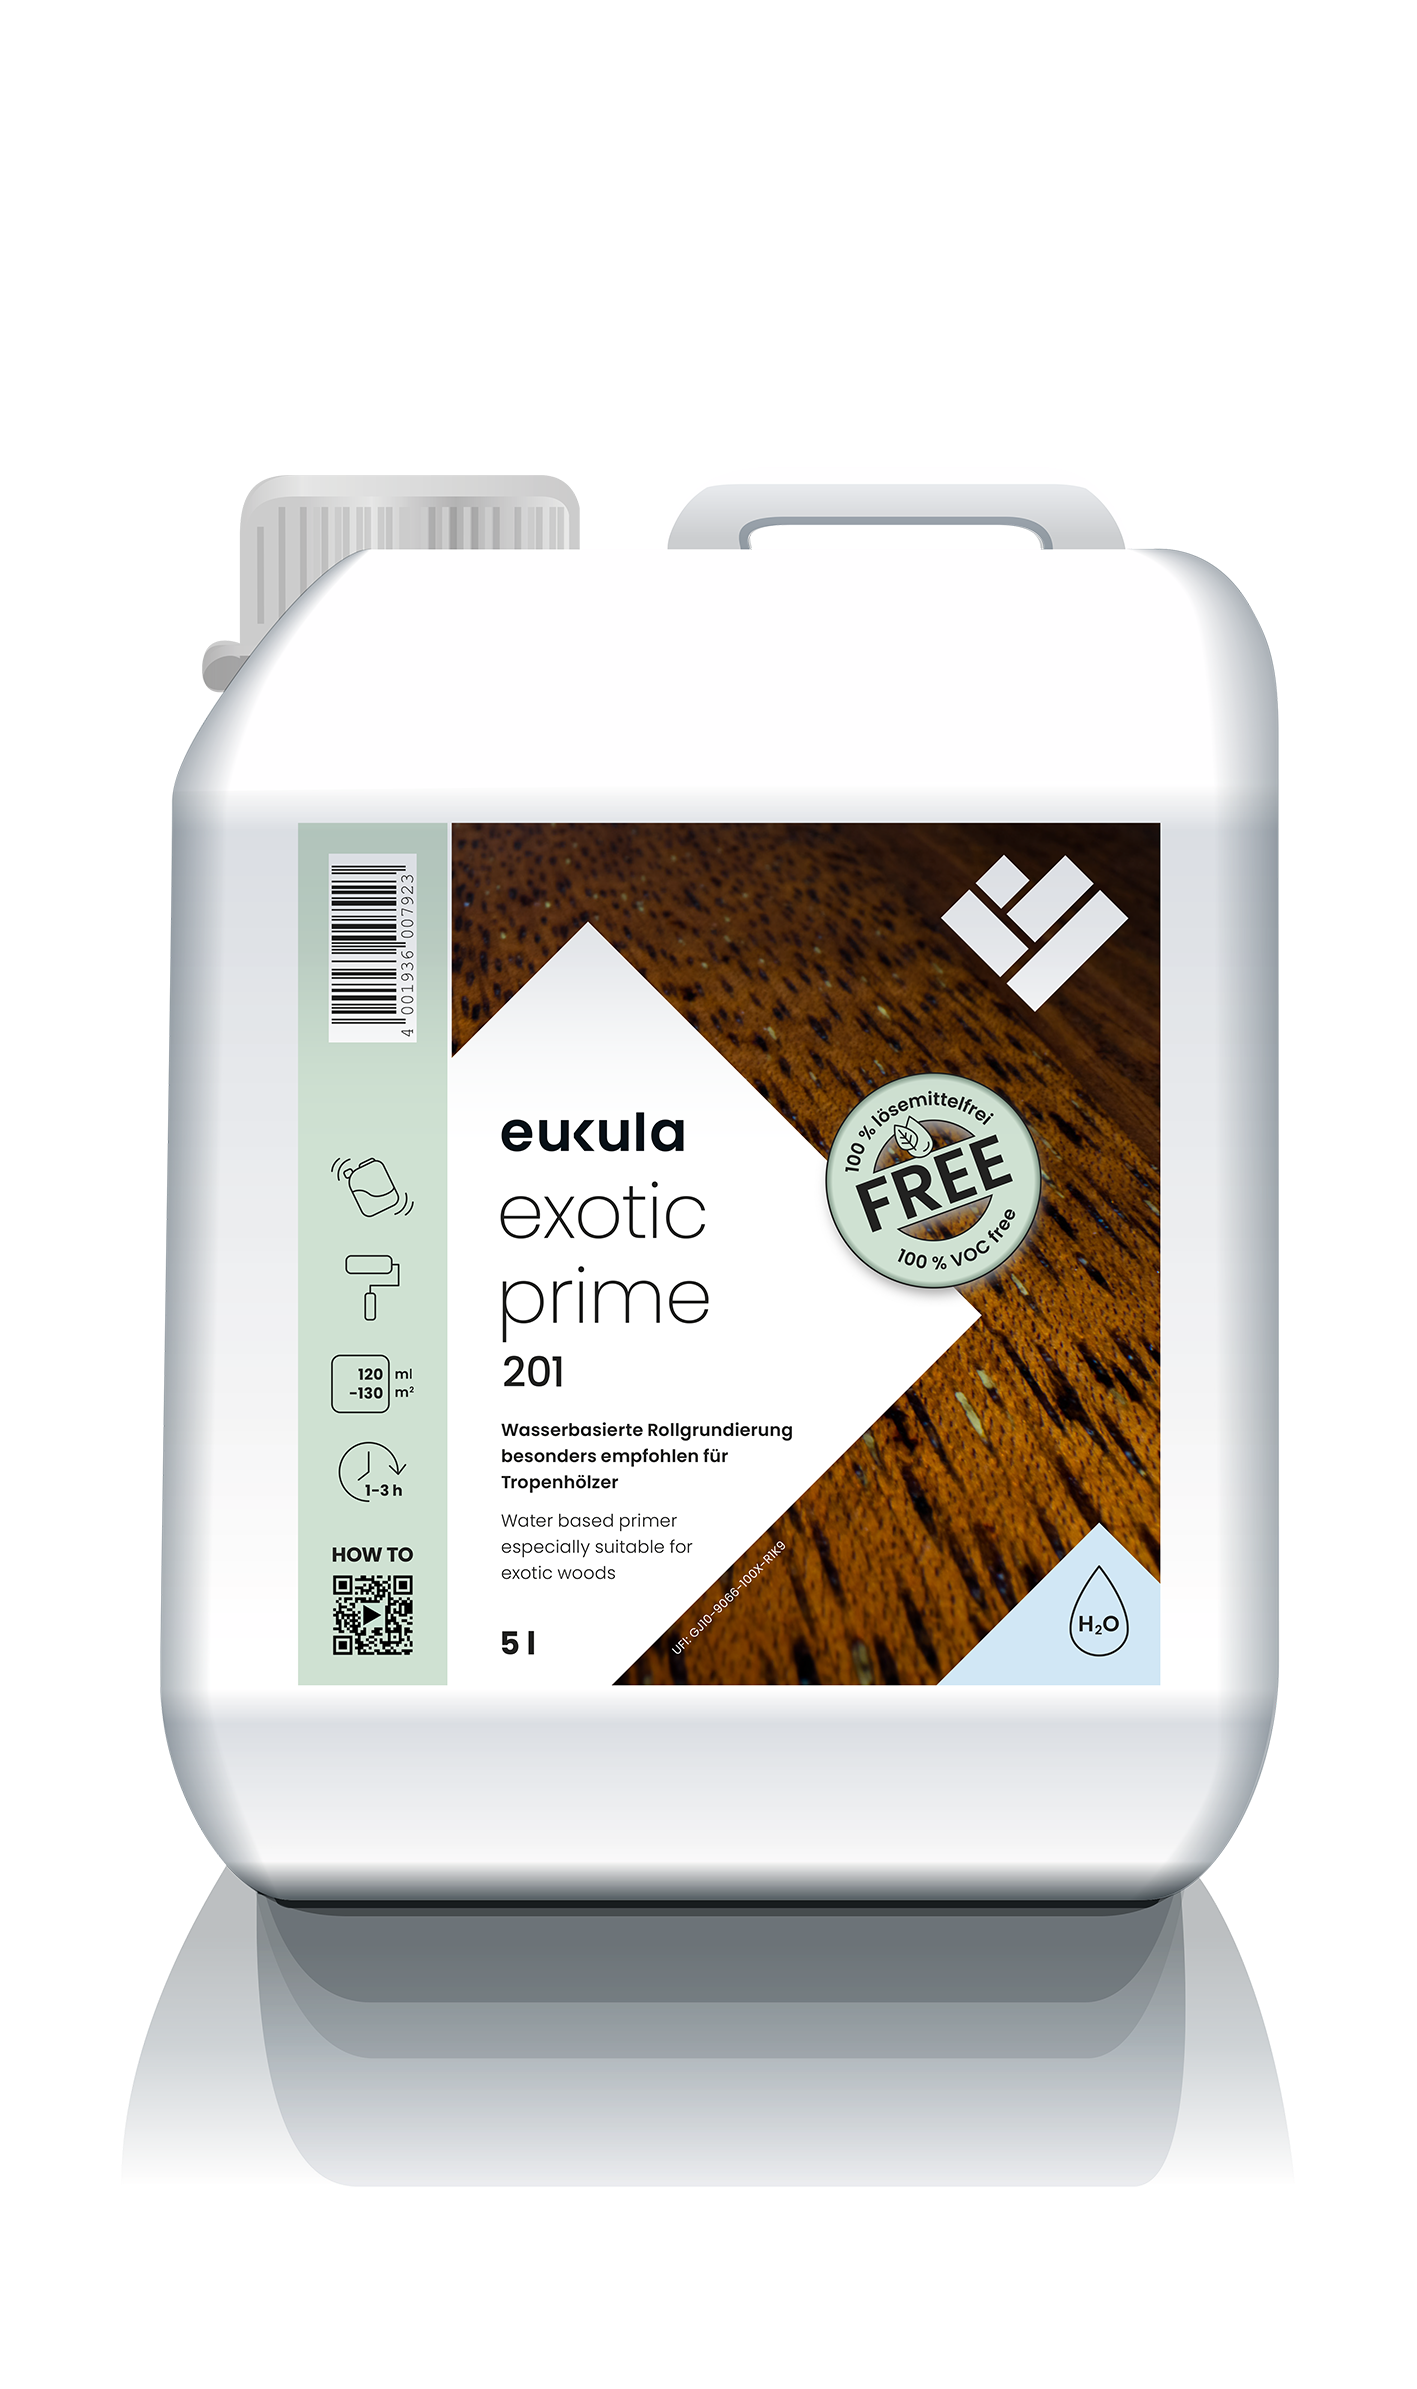 Eukula Exotic Prime 201